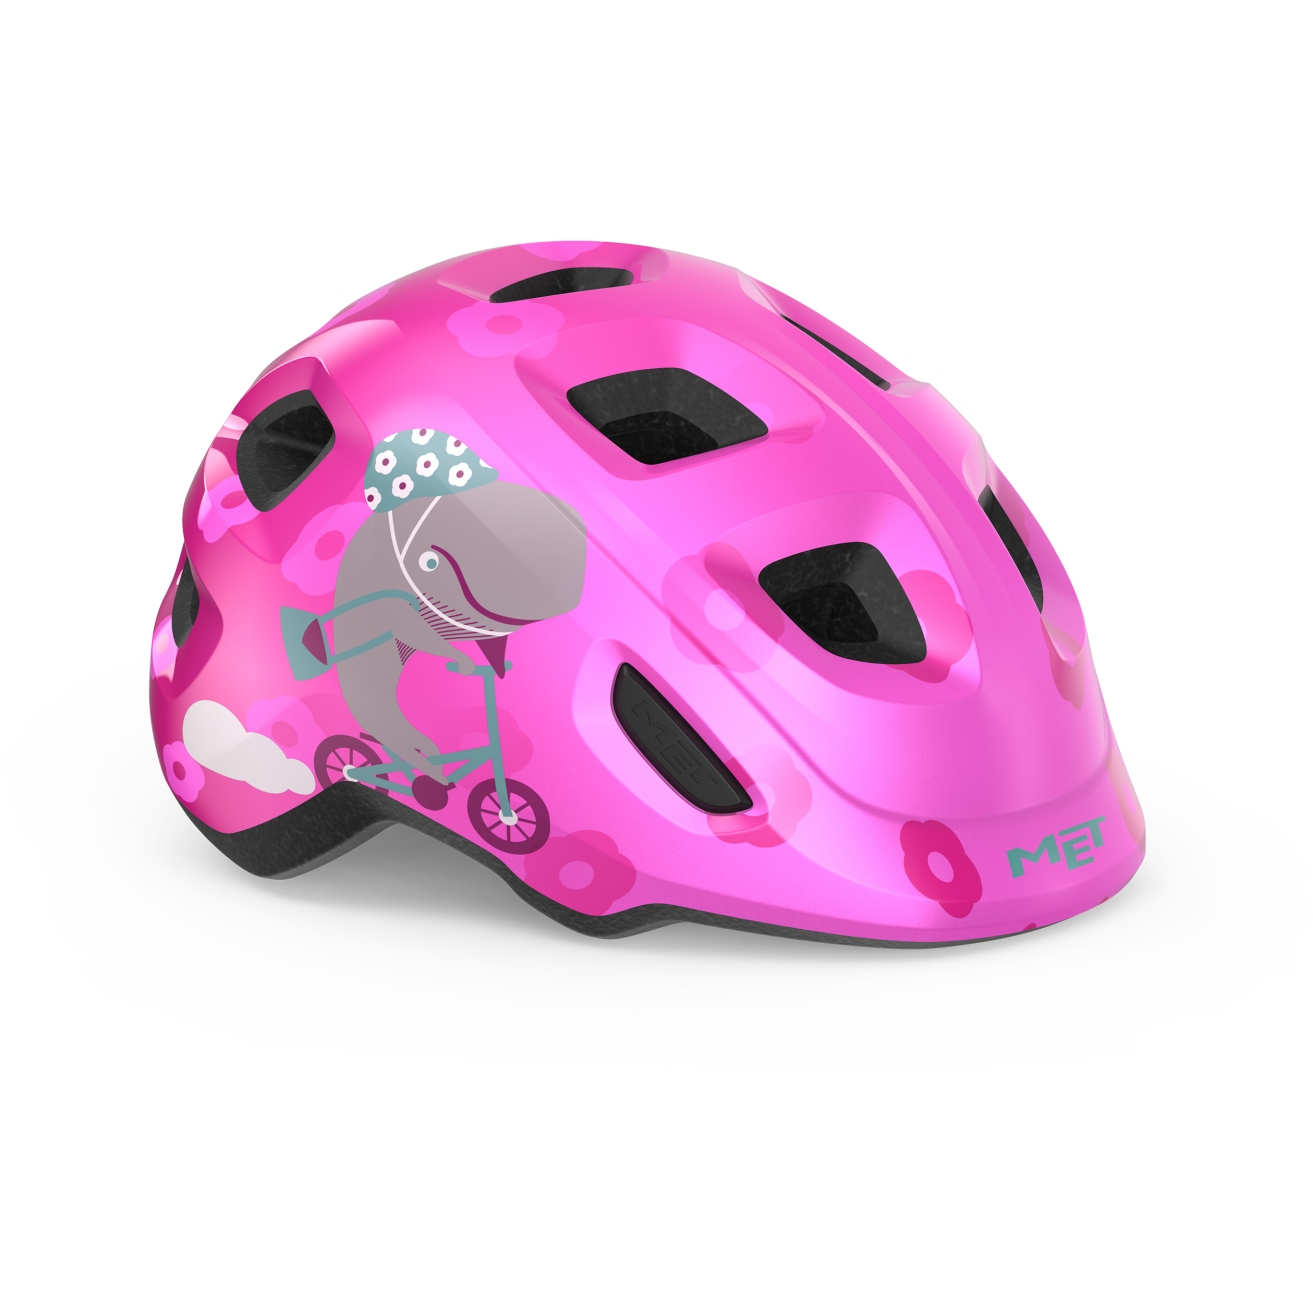 Produktbild von MET Hooray Fahrradhelm Kinder - pink whale glossy